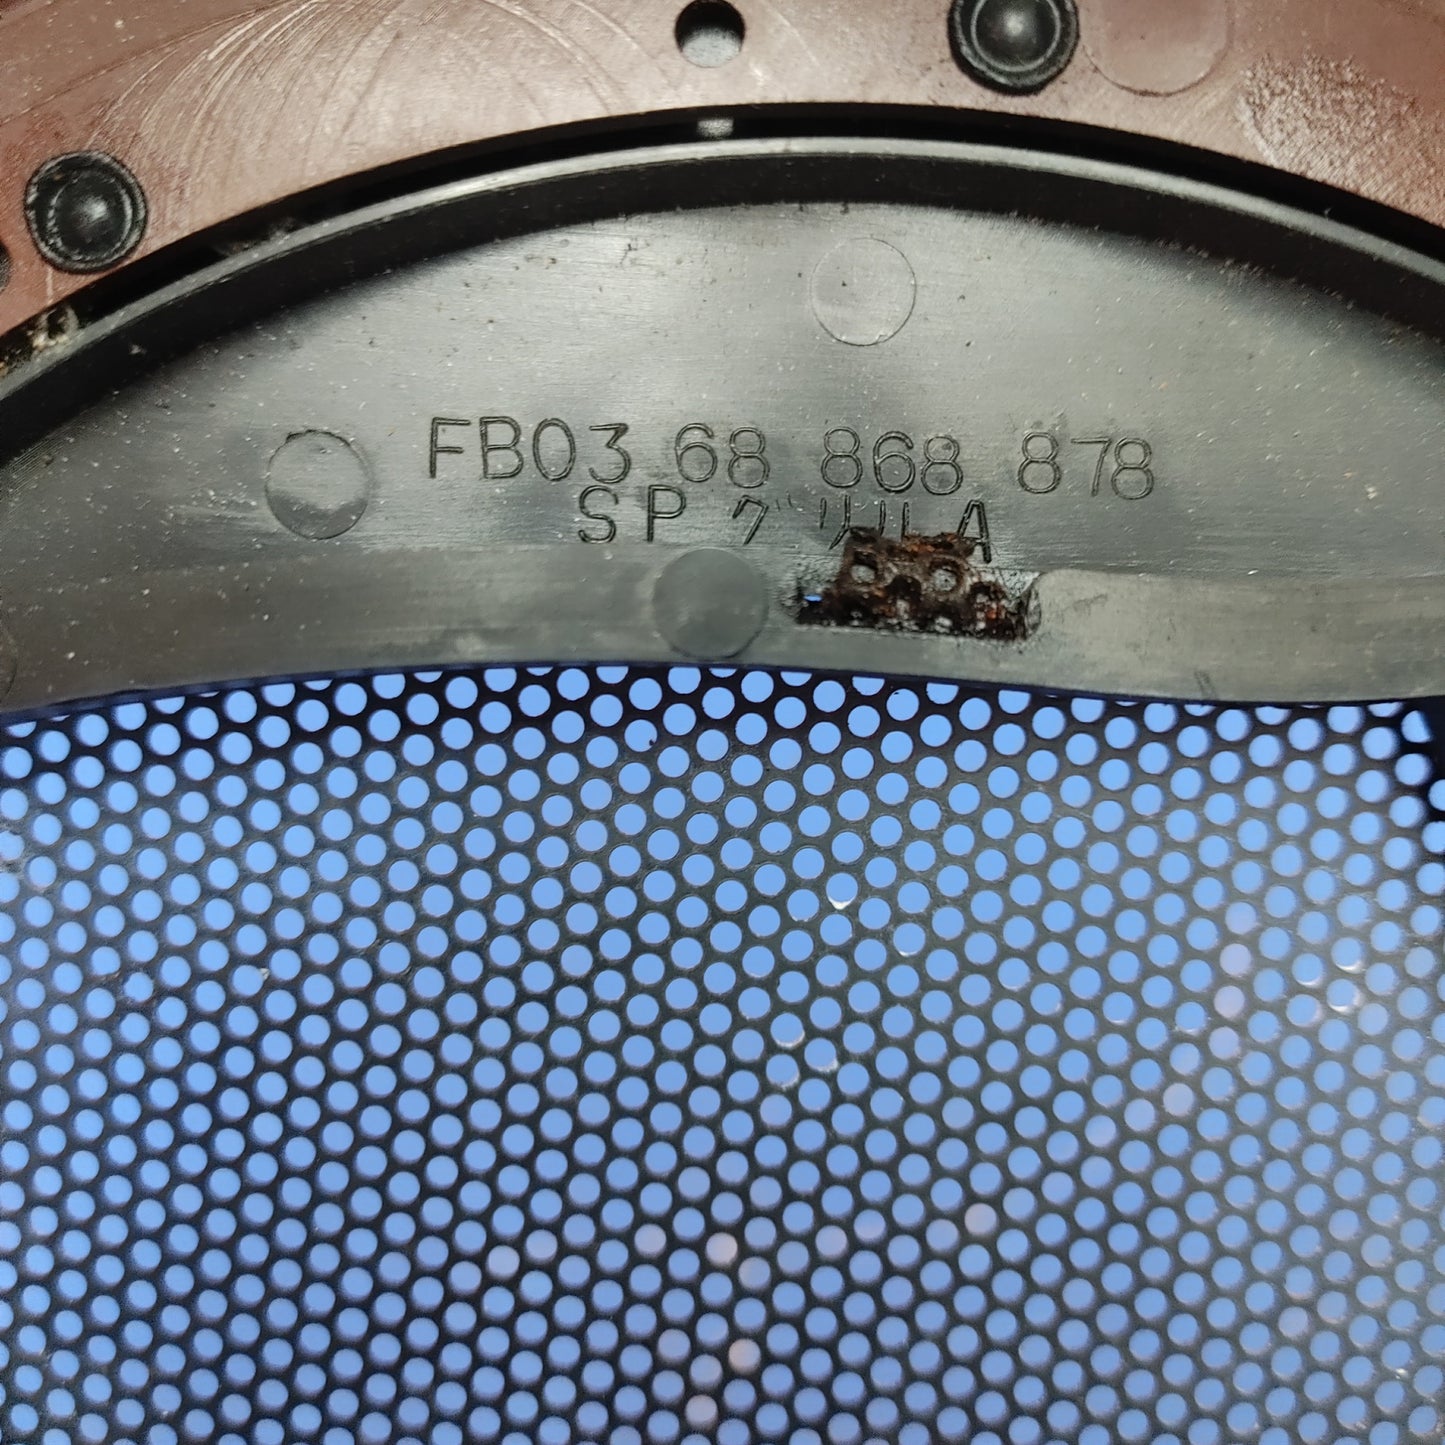 LHD RH Speaker Cover (Maroon) FB03-68-868 878 RX7 FC FC3S 79 - 85 Mazda S8B22/4